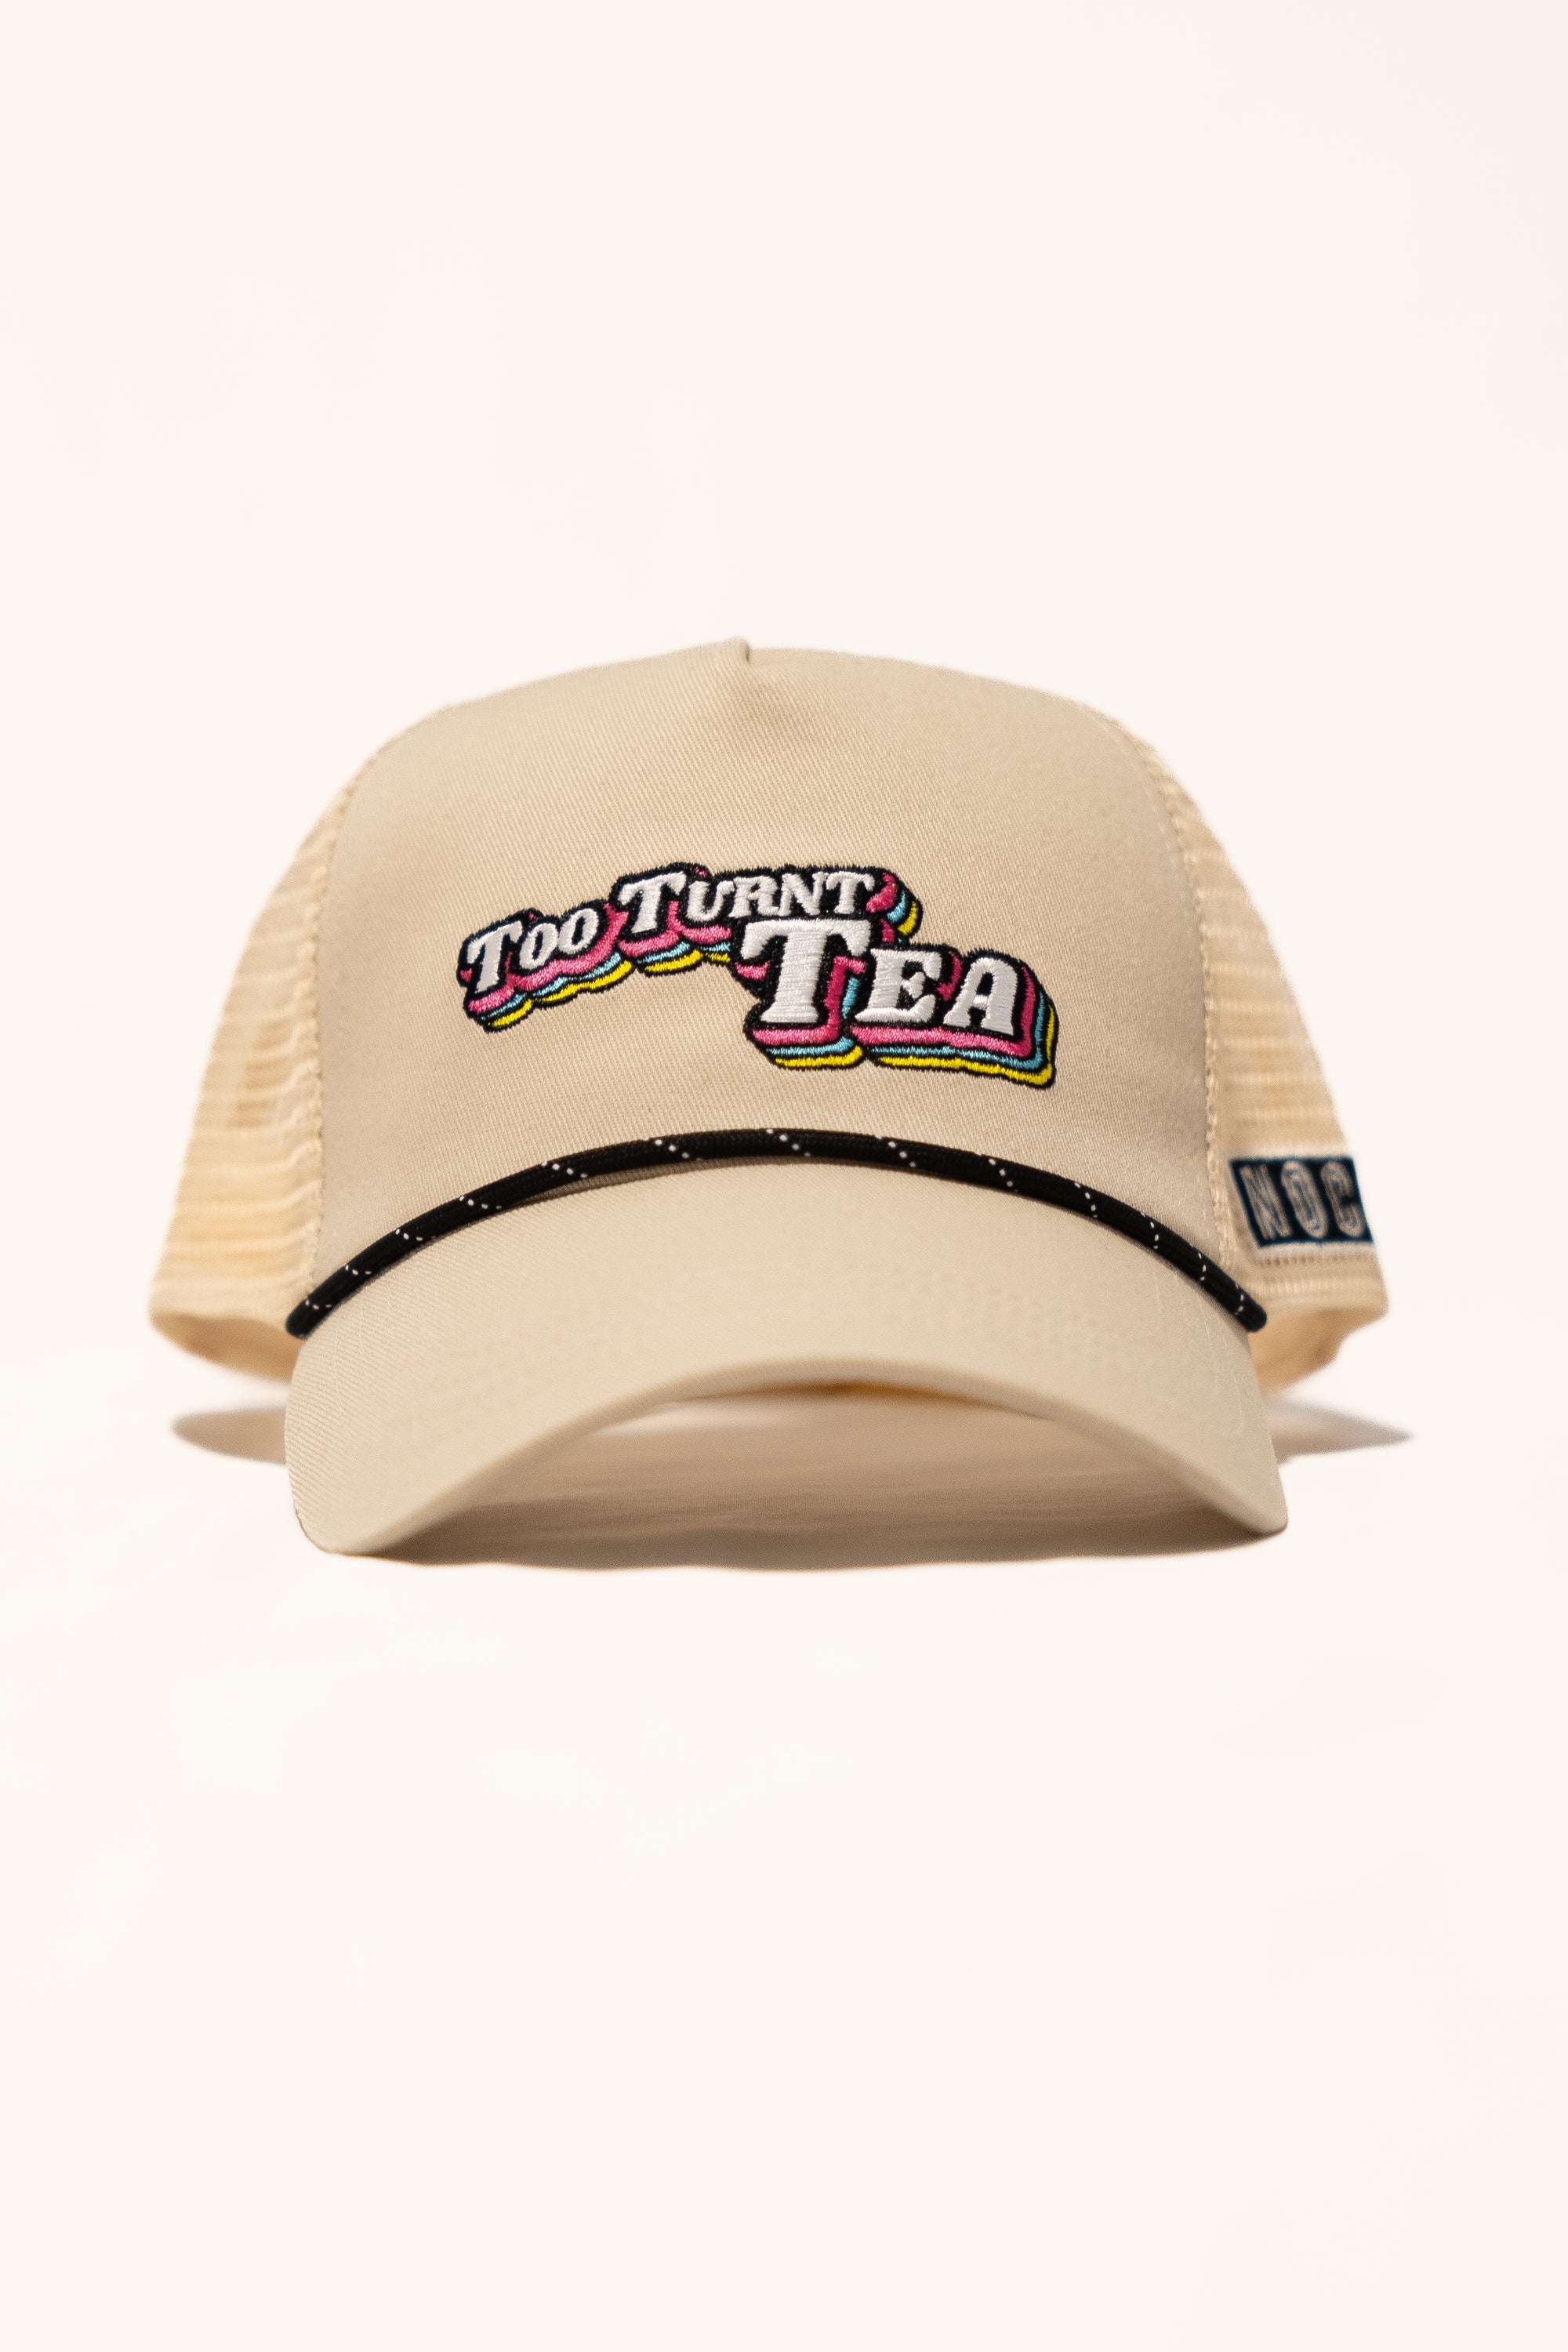 Too Turnt Tea Hat